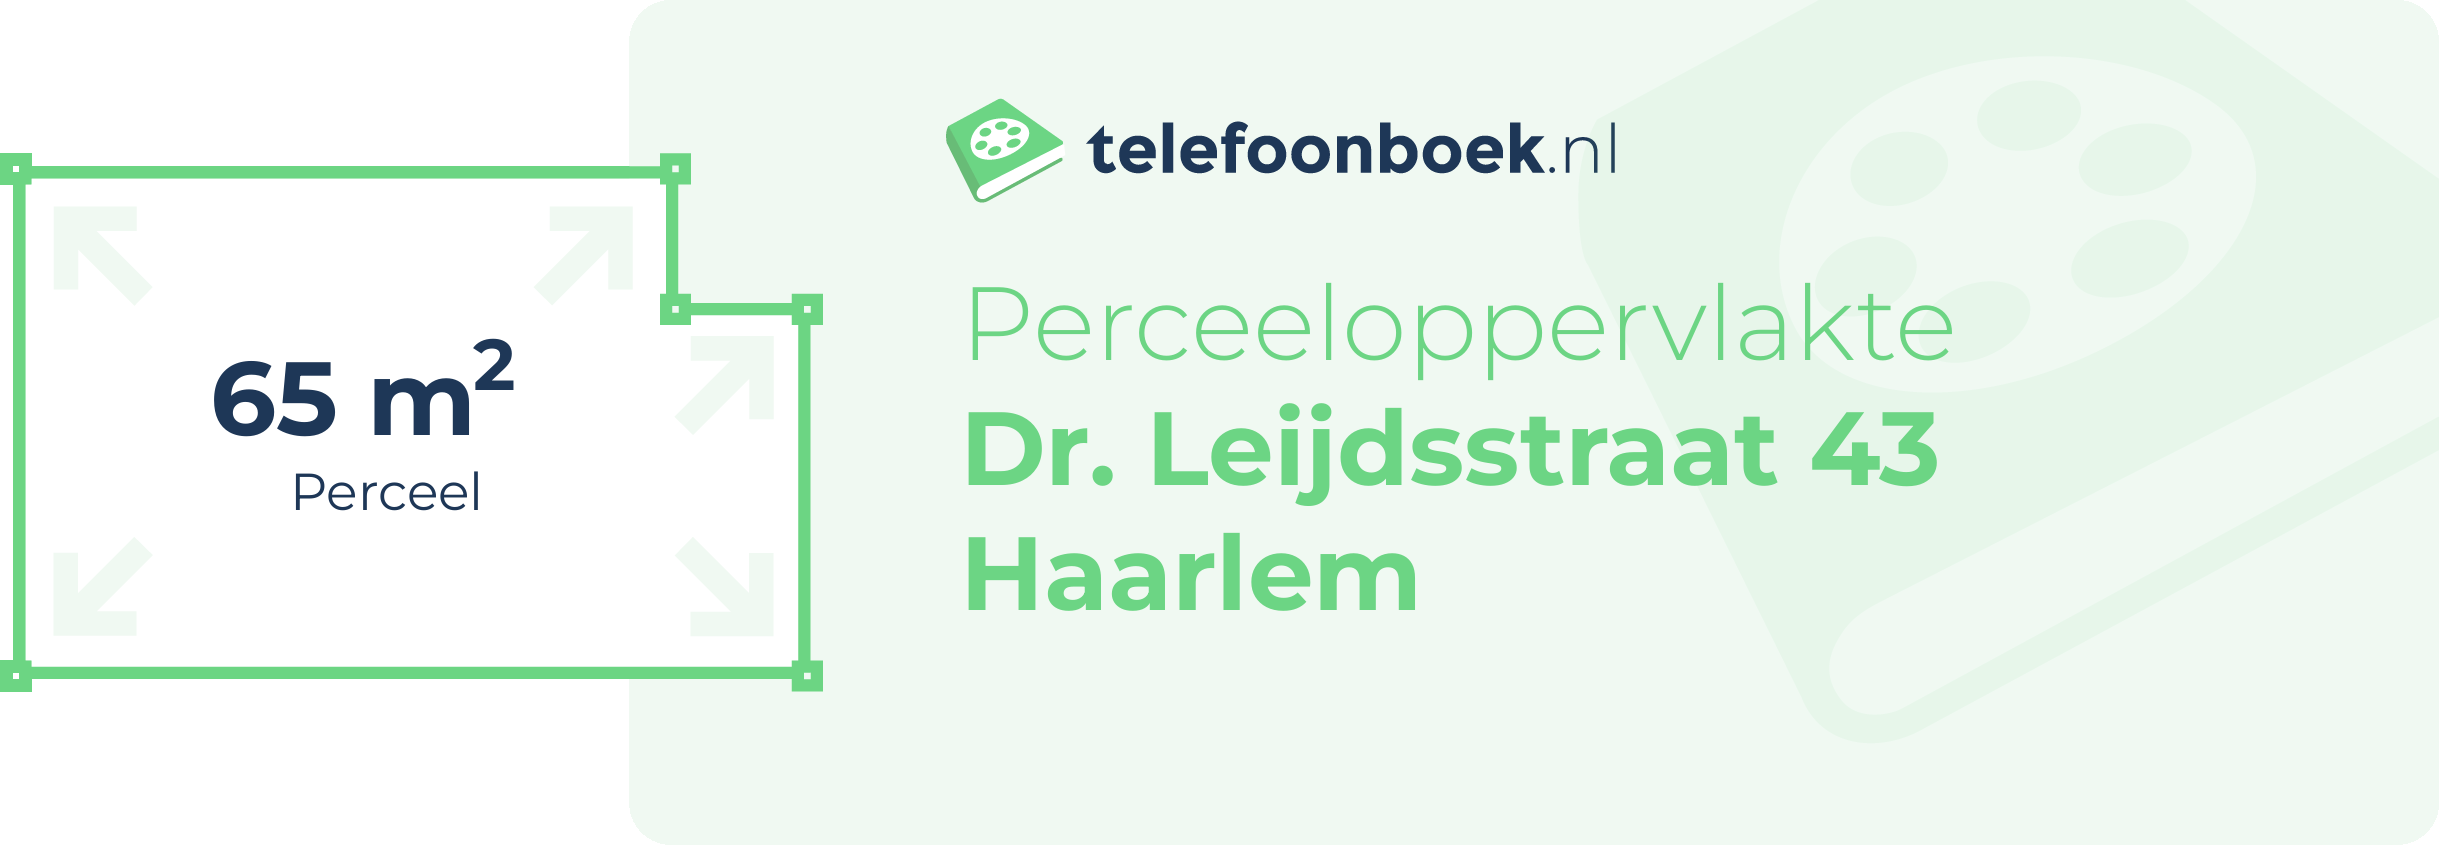 Perceeloppervlakte Dr. Leijdsstraat 43 Haarlem